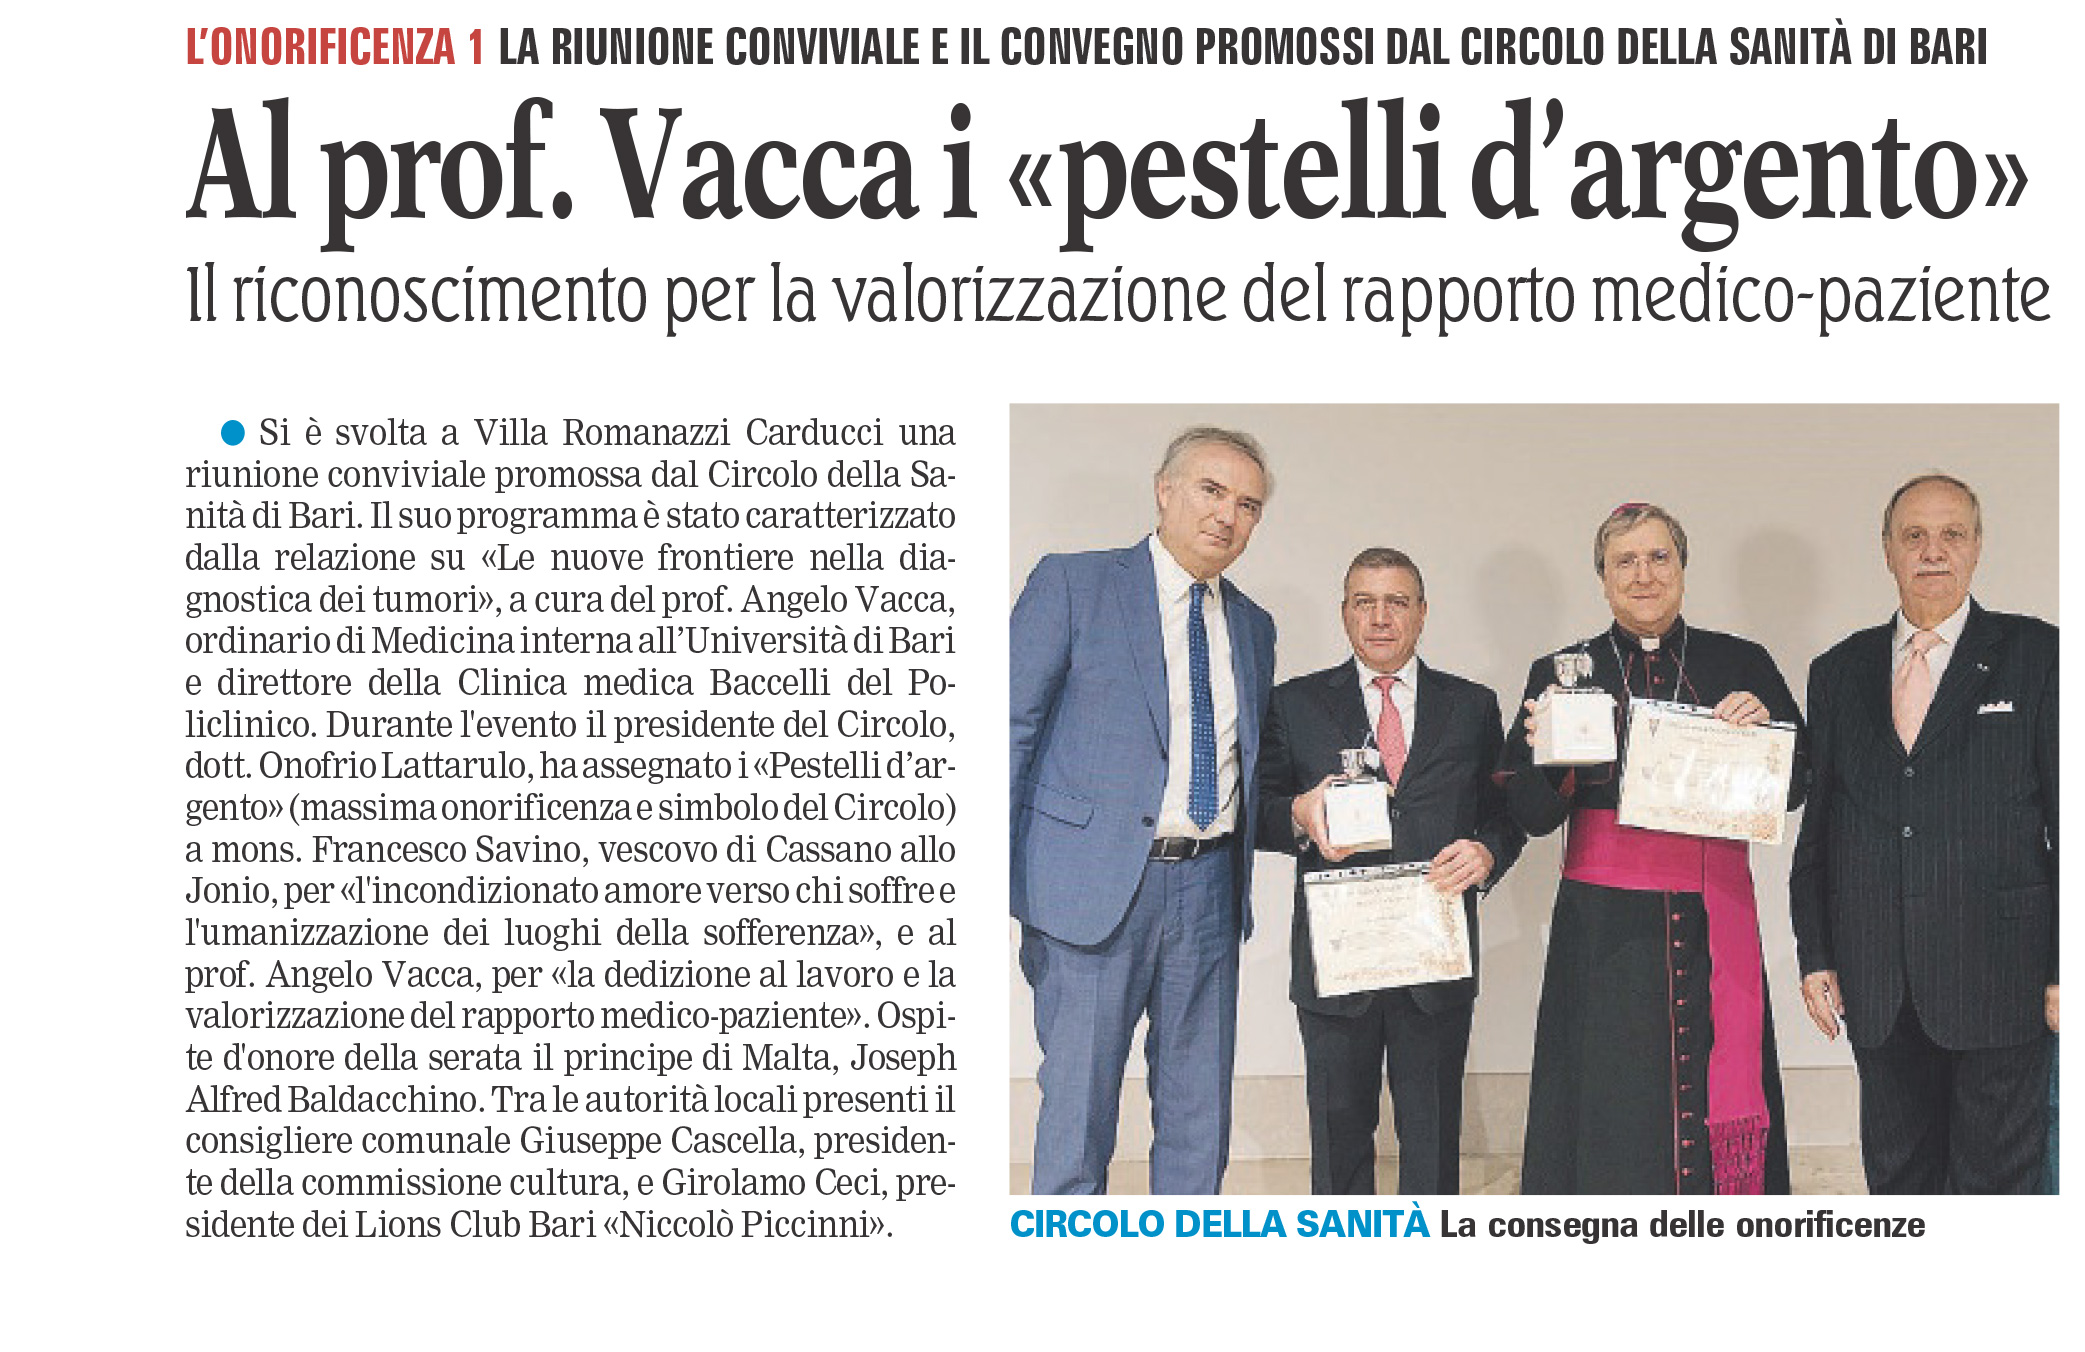 Il Circolo della Sanità di Bari assegna i Pestelli d’Argento al prof. Angelo Vacca e a S.E. Mons Francesco Savino 